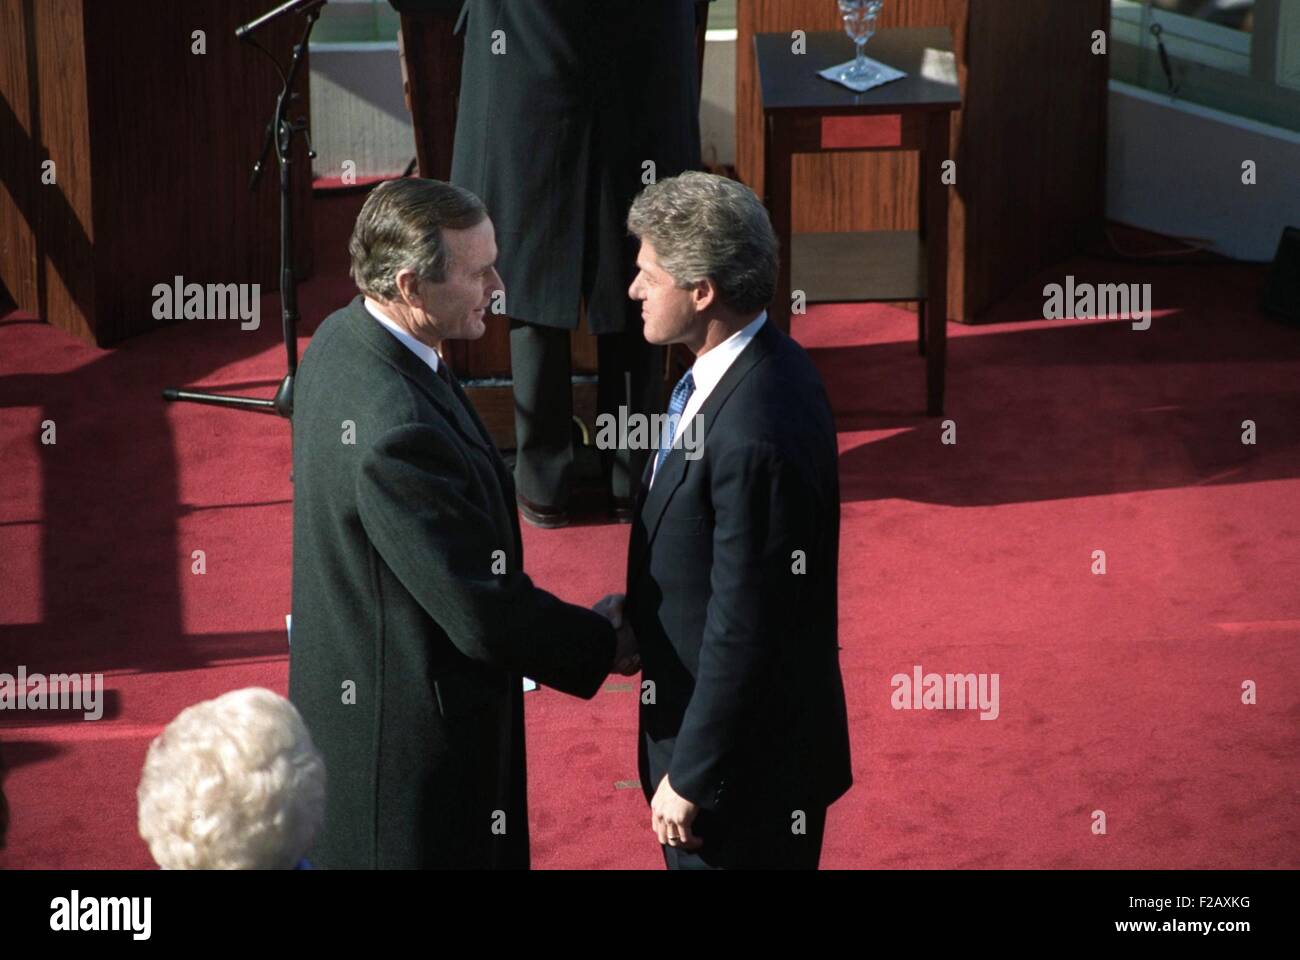 Le Président sortant, George H. W. Bush et le président Bill Clinton. Le 20 janvier 1993. Ils se serrent la main juste après les cérémonies inaugurales au Capitole. (BSLOC 2015 2 185) Banque D'Images